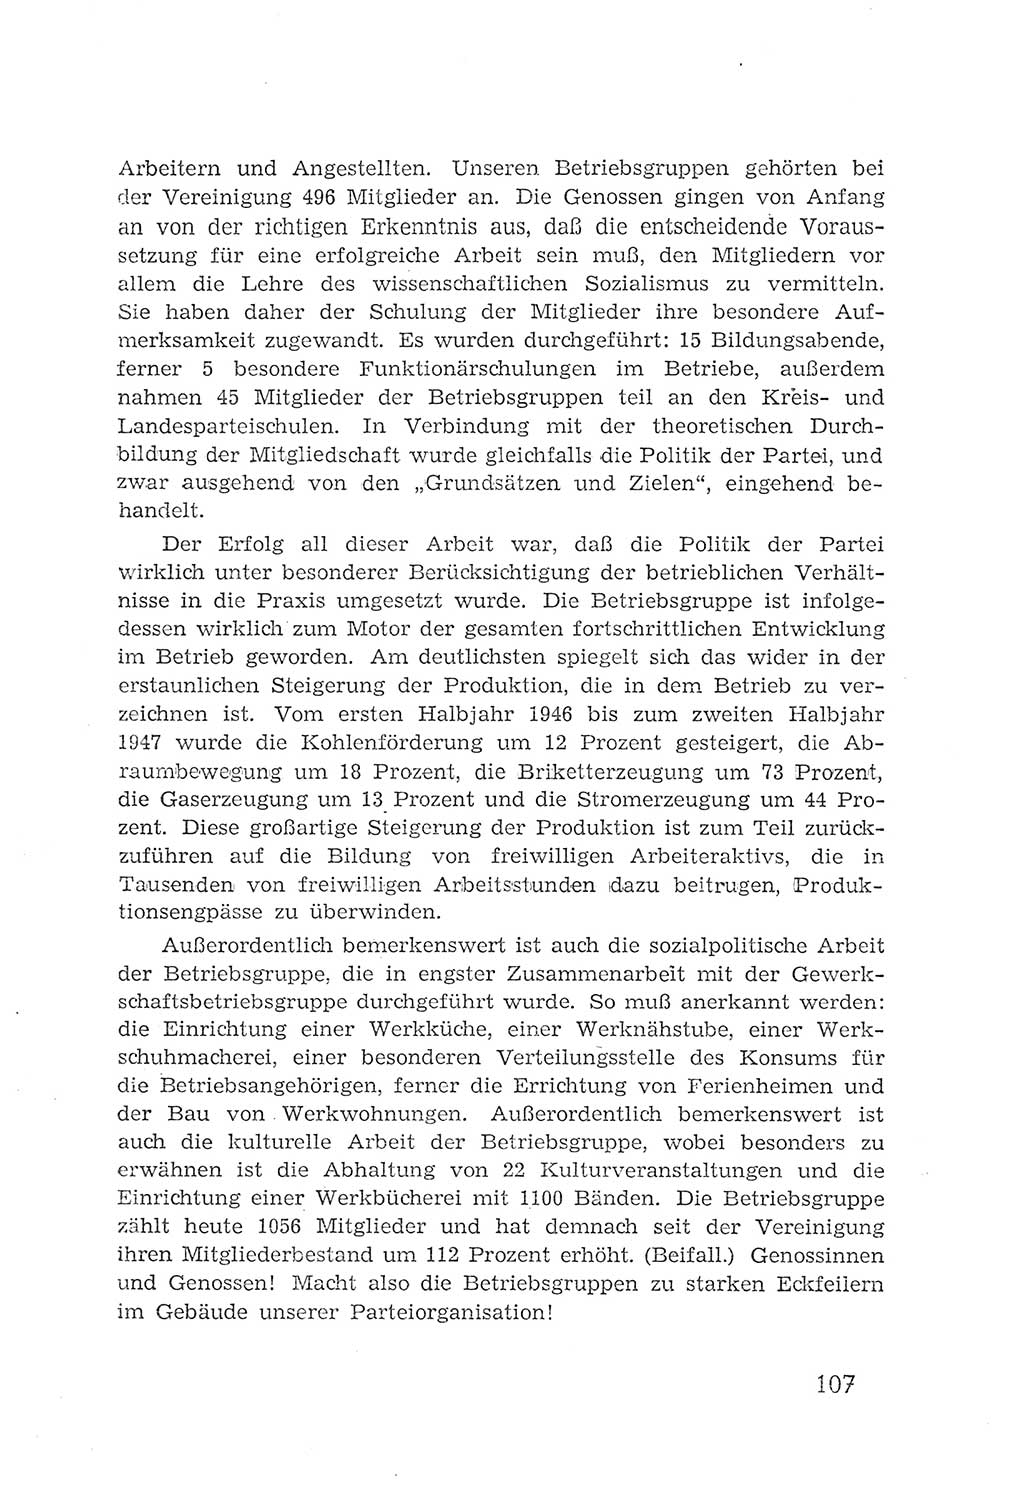 Protokoll der Verhandlungen des 2. Parteitages der Sozialistischen Einheitspartei Deutschlands (SED) [Sowjetische Besatzungszone (SBZ) Deutschlands] 1947, Seite 107 (Prot. Verh. 2. PT SED SBZ Dtl. 1947, S. 107)